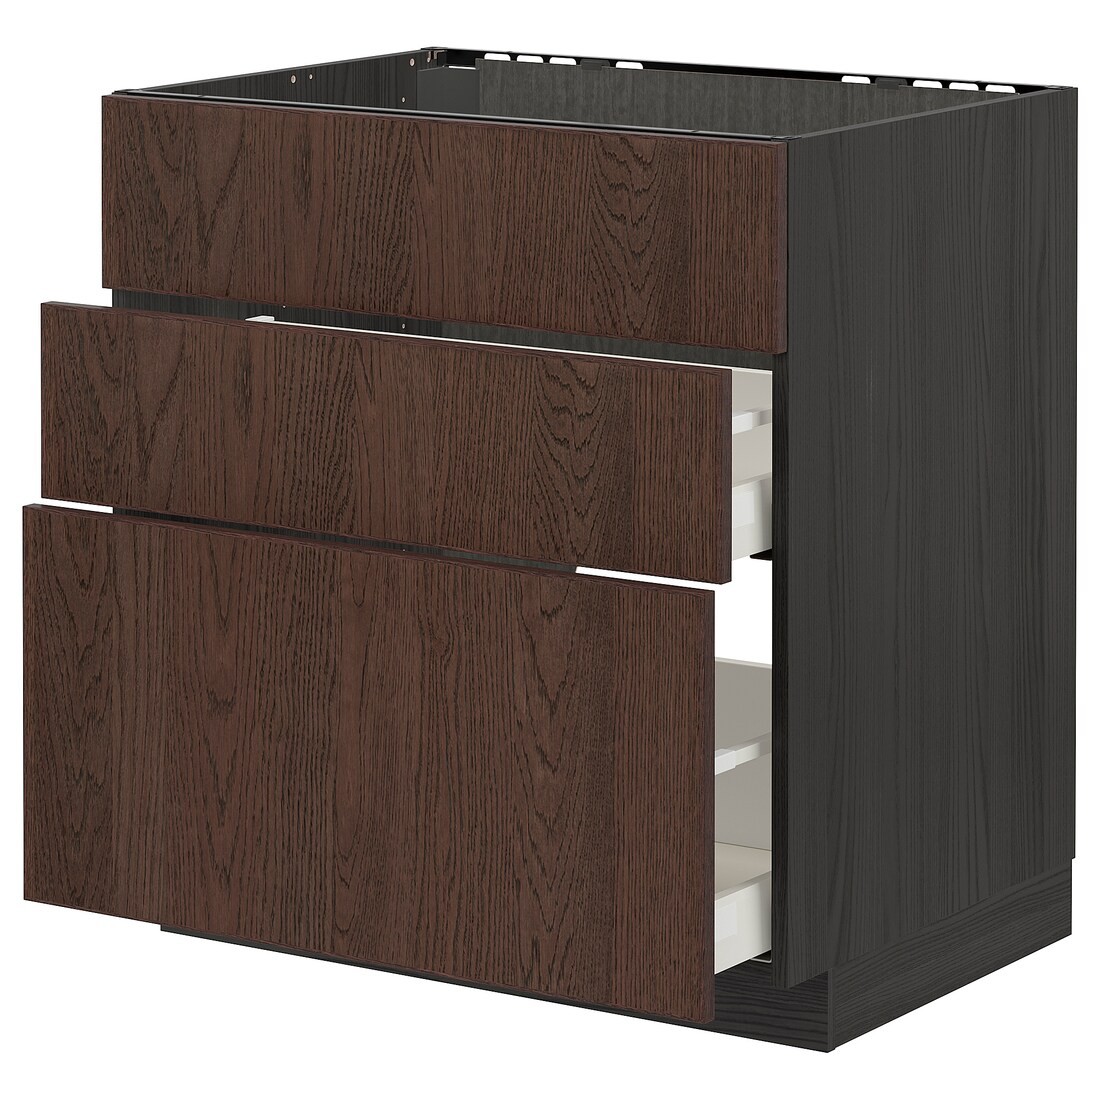 METOD МЕТОД / MAXIMERA МАКСИМЕРА Напольный шкаф для варочной панели / вытяжка с ящиком, черный / Sinarp коричневый, 80x60 см